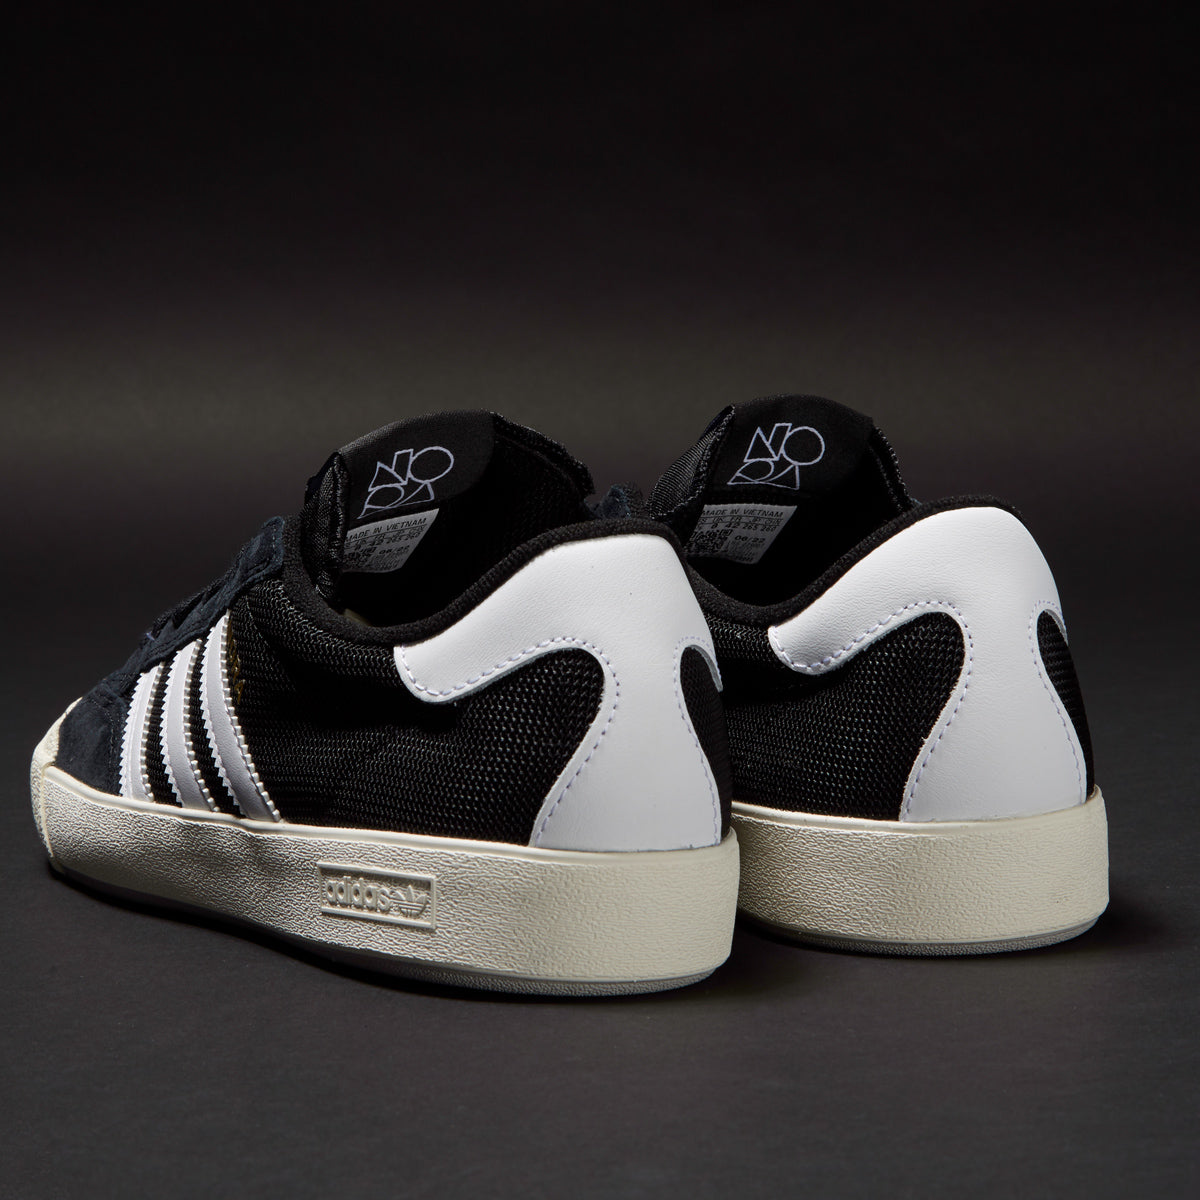 Adidas Nora Shoes - Black/White/Grey image 5